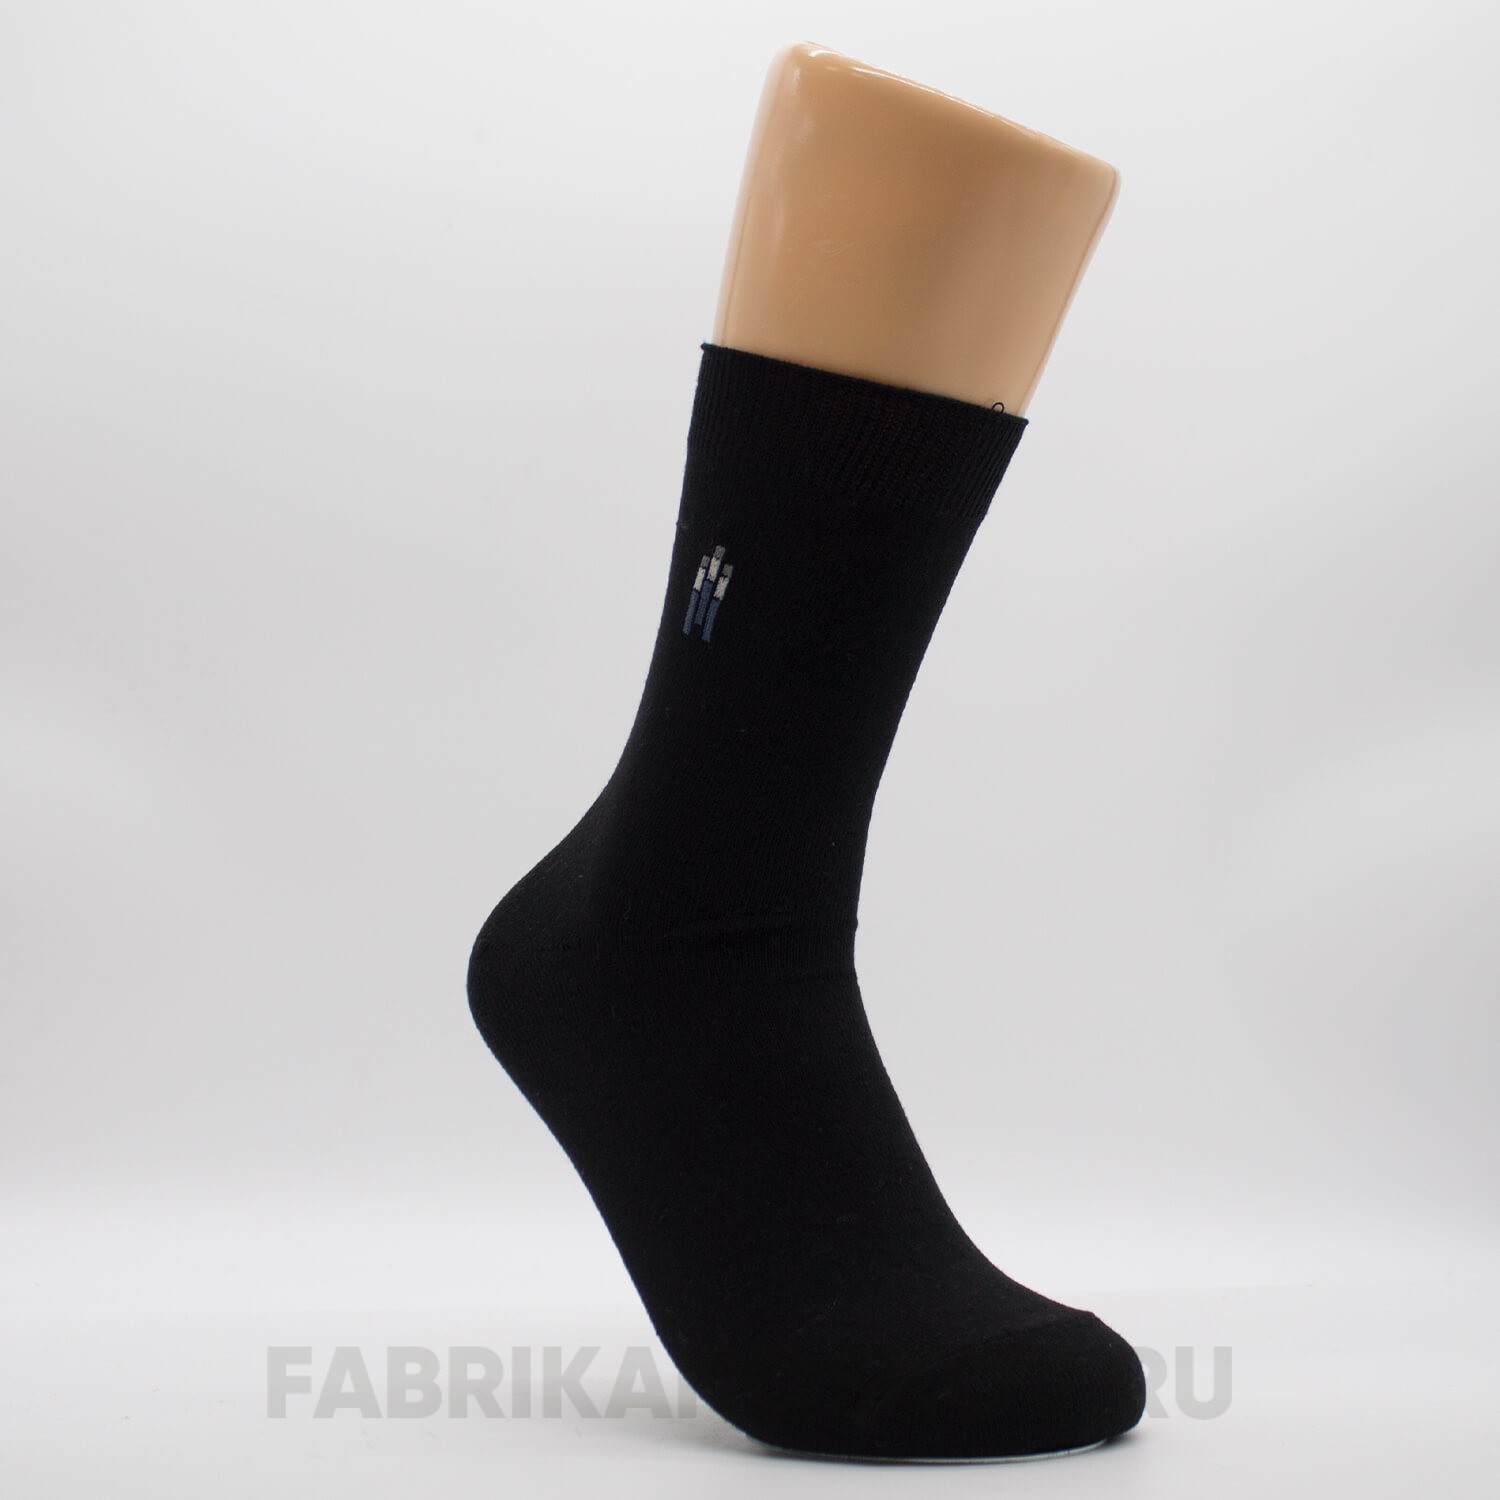  Мужские гладкие носки с полосками разных цветов оптом